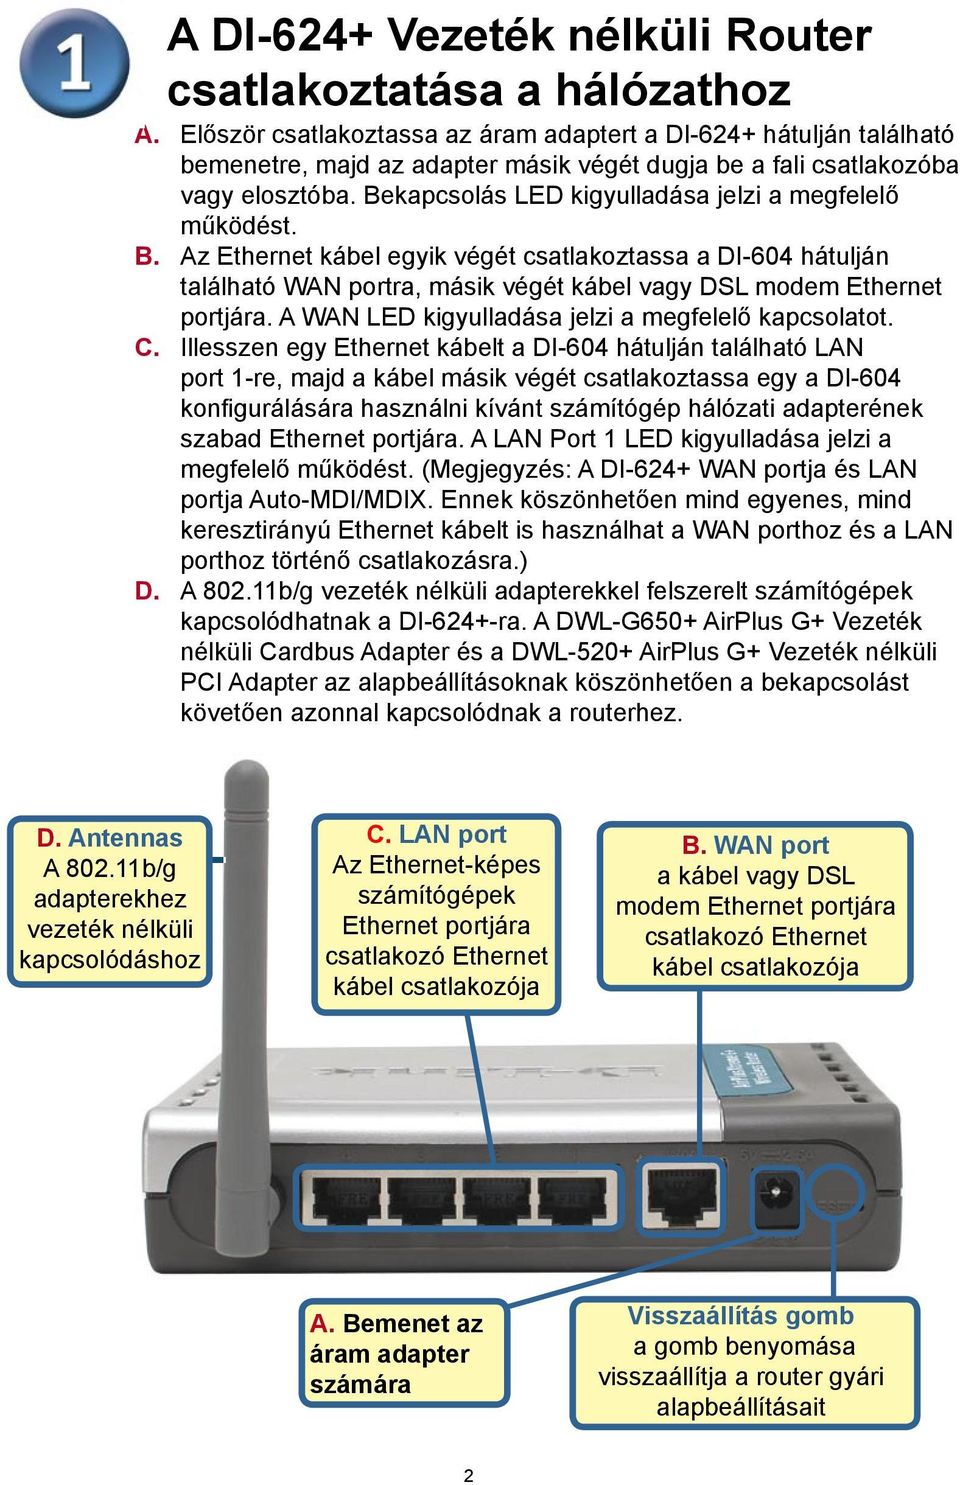 Bekapcsolás LED kigyulladása jelzi a megfelelő működést. B. Az Ethernet kábel egyik végét csatlakoztassa a DI-604 hátulján található WAN portra, másik végét kábel vagy DSL modem Ethernet portjára.